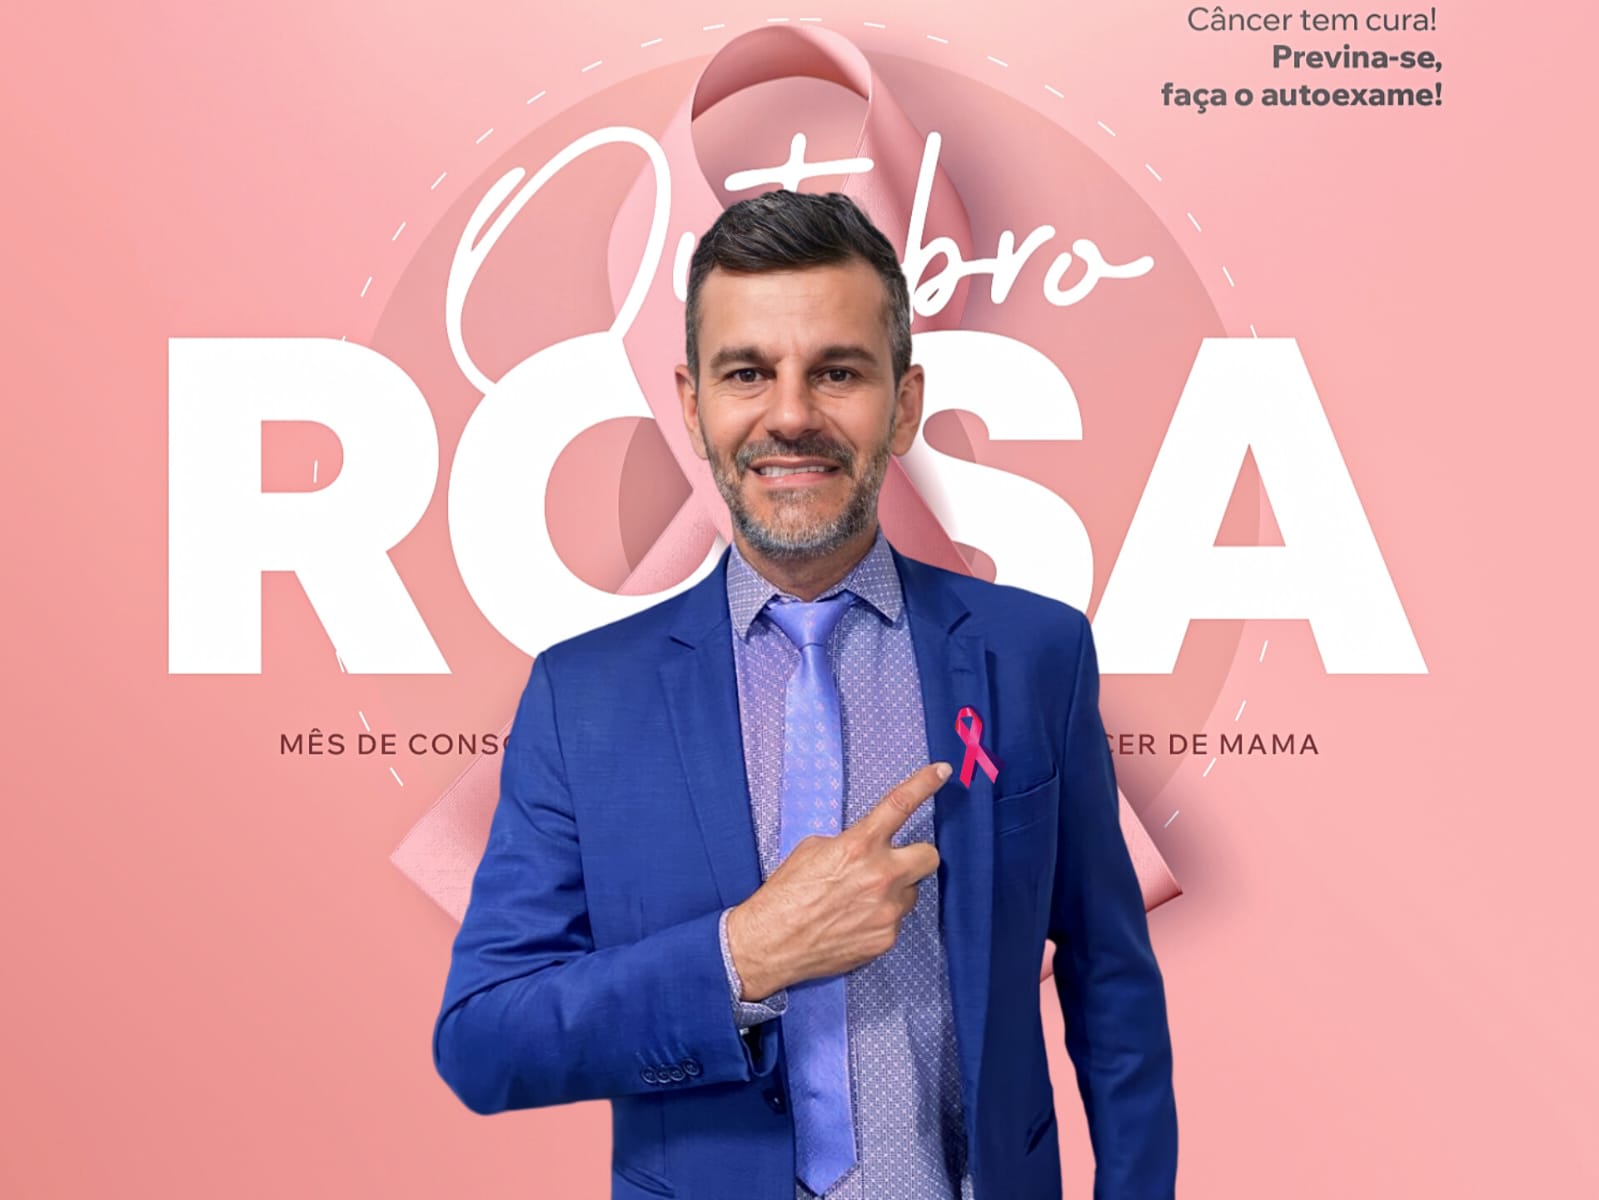 Outubro Rosa: Vereador Mauro Lacerda convida a população a continuar criando ações que previnam o câncer de mama. “A prevenção continua”